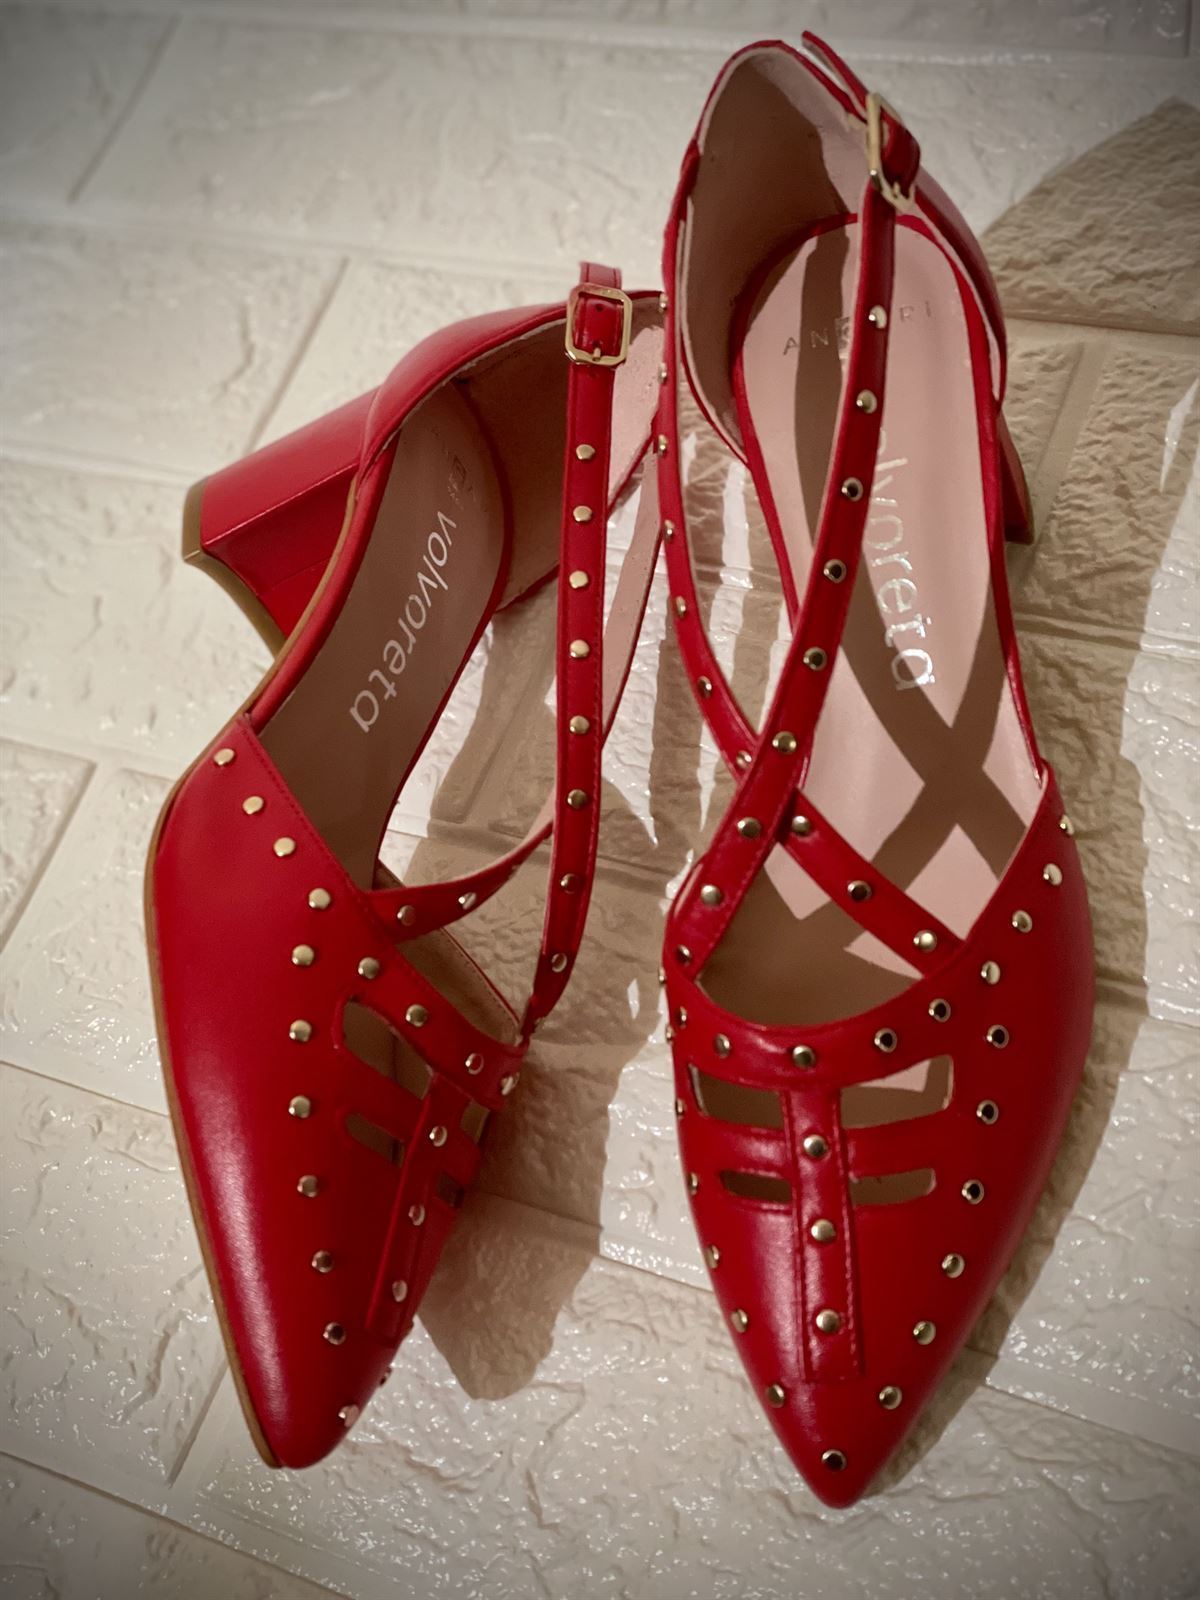 Hermana Emociónate boxeo zapato Angari tachas rojo - Zapatos